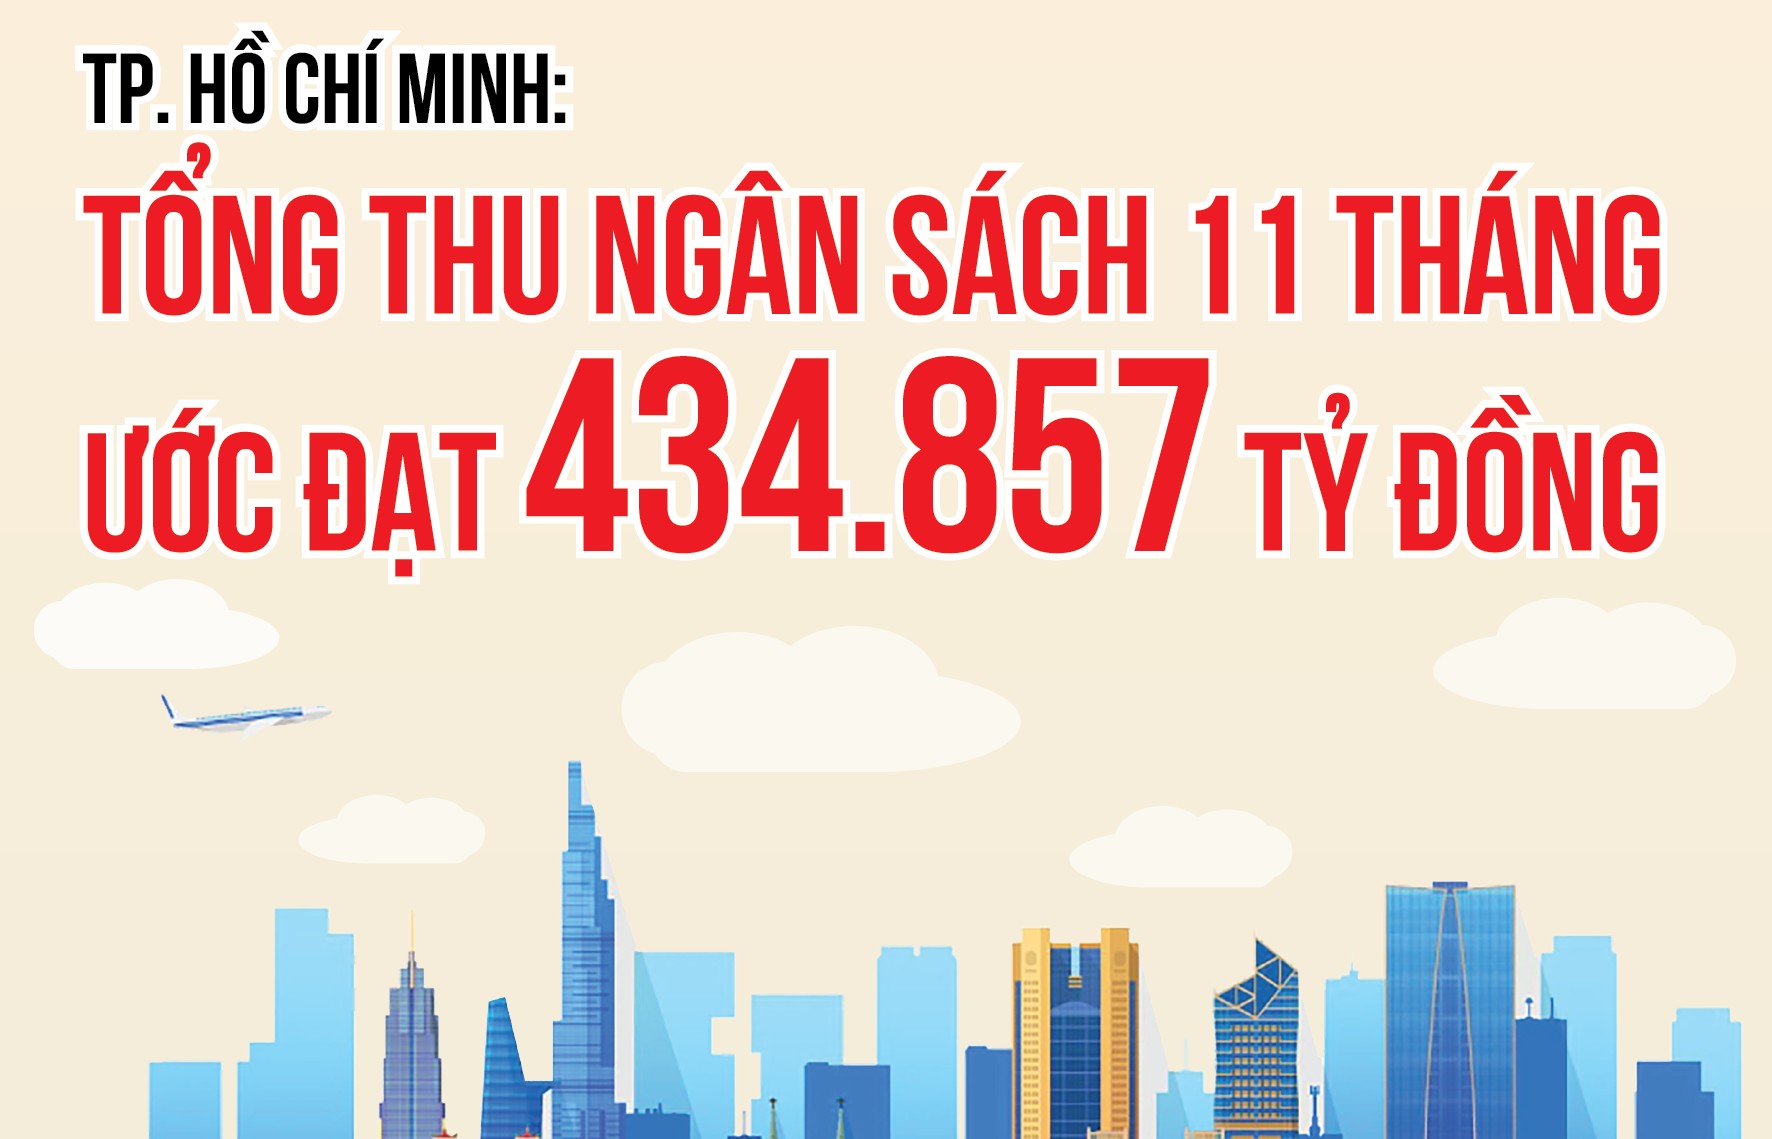 TP. Hồ Chí Minh: Tổng thu ngân sách 11 tháng ước đạt 434.857 tỷ đồng